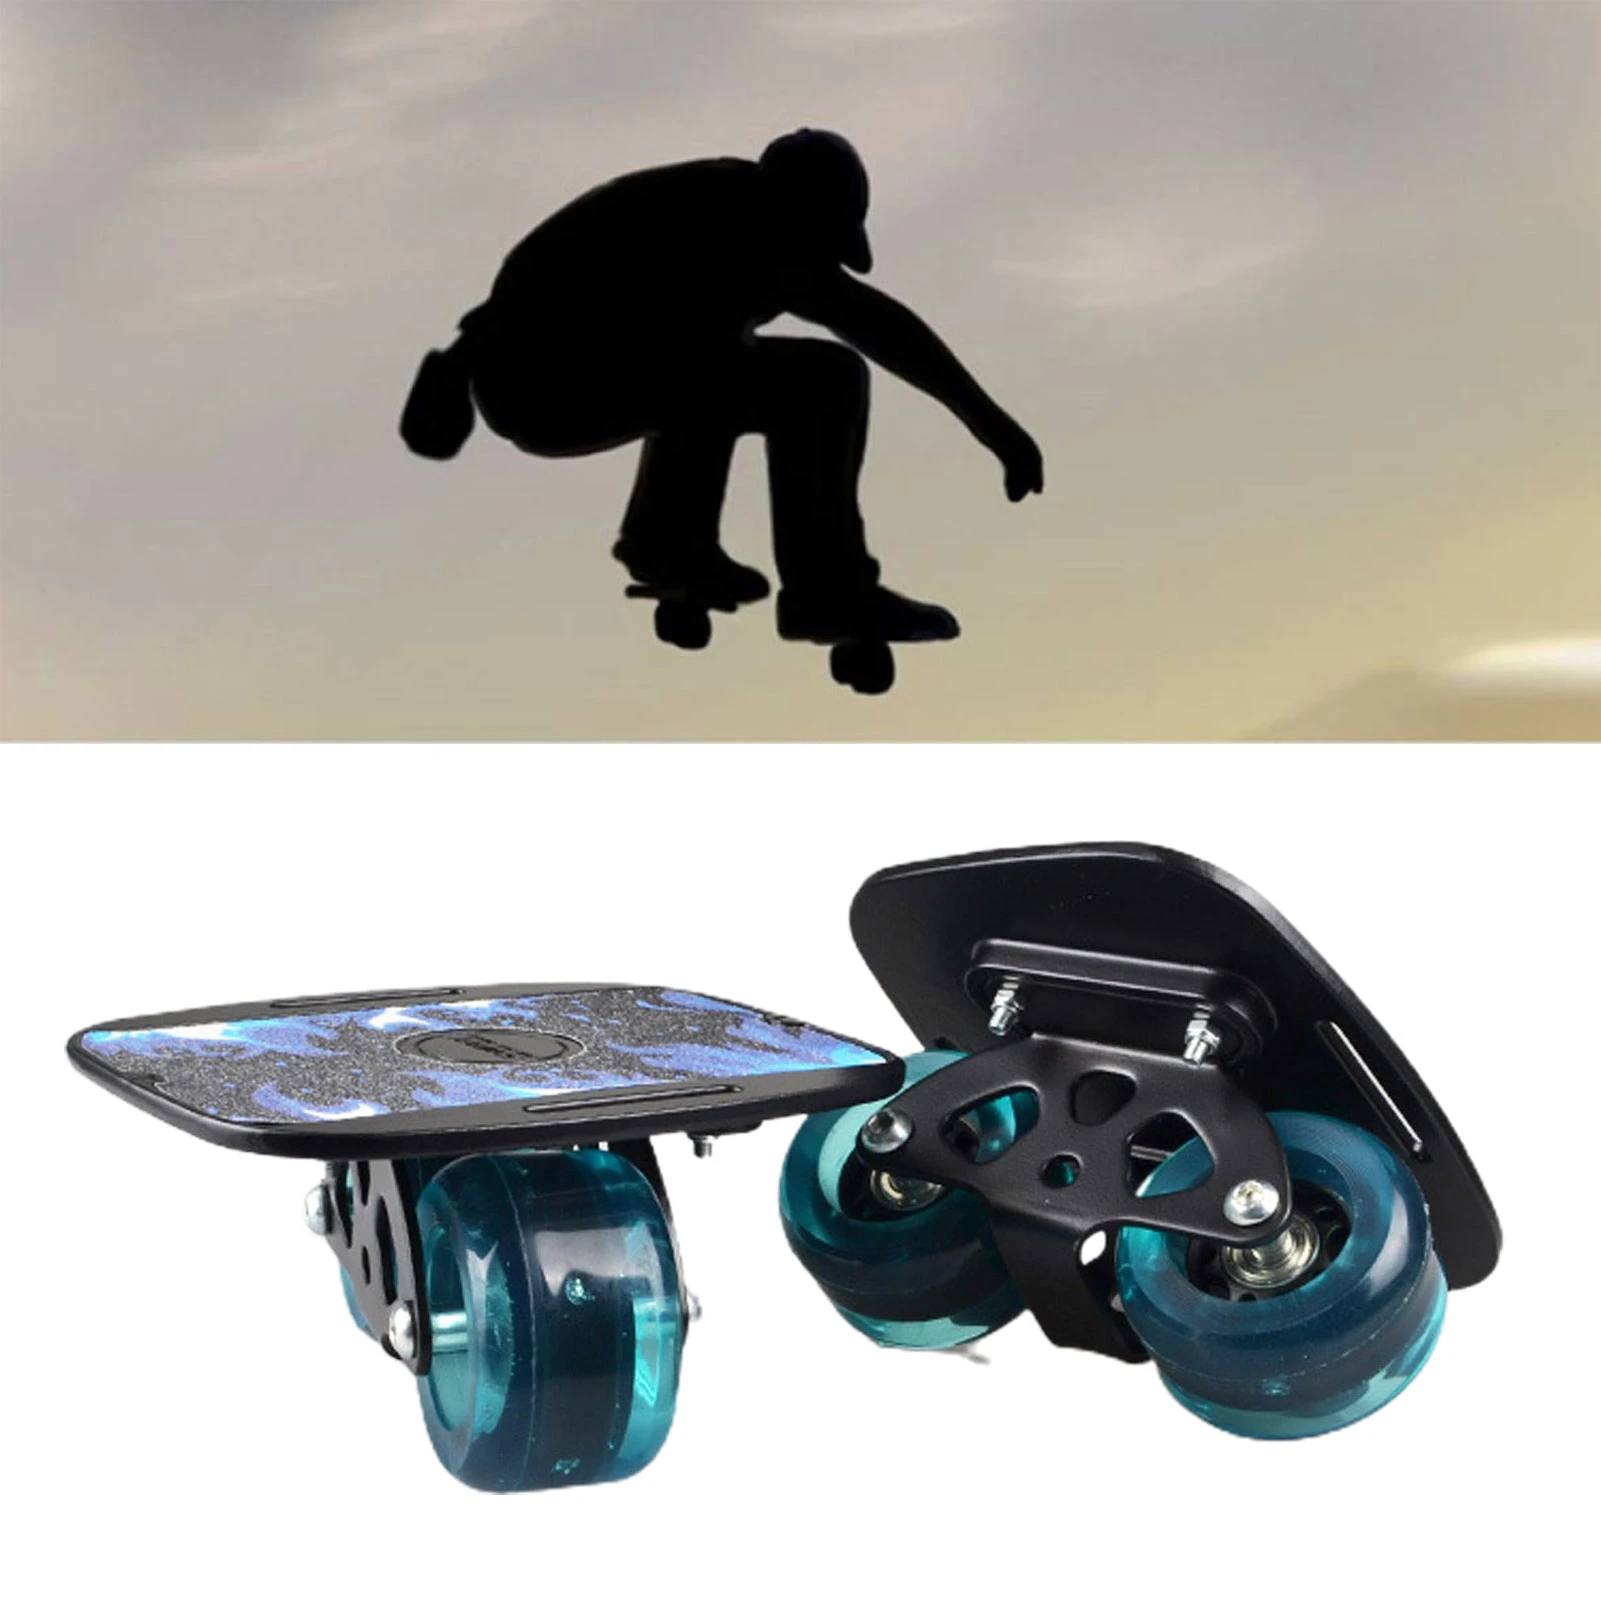 Prestatie wrijving hiërarchie 1 Pair Skateboard Aluminium Alloy Mini Drift Roller Road Drift Skates Plate  Skate Fish Short Board Roller Skateboard For Gift|Skate Board| - AliExpress